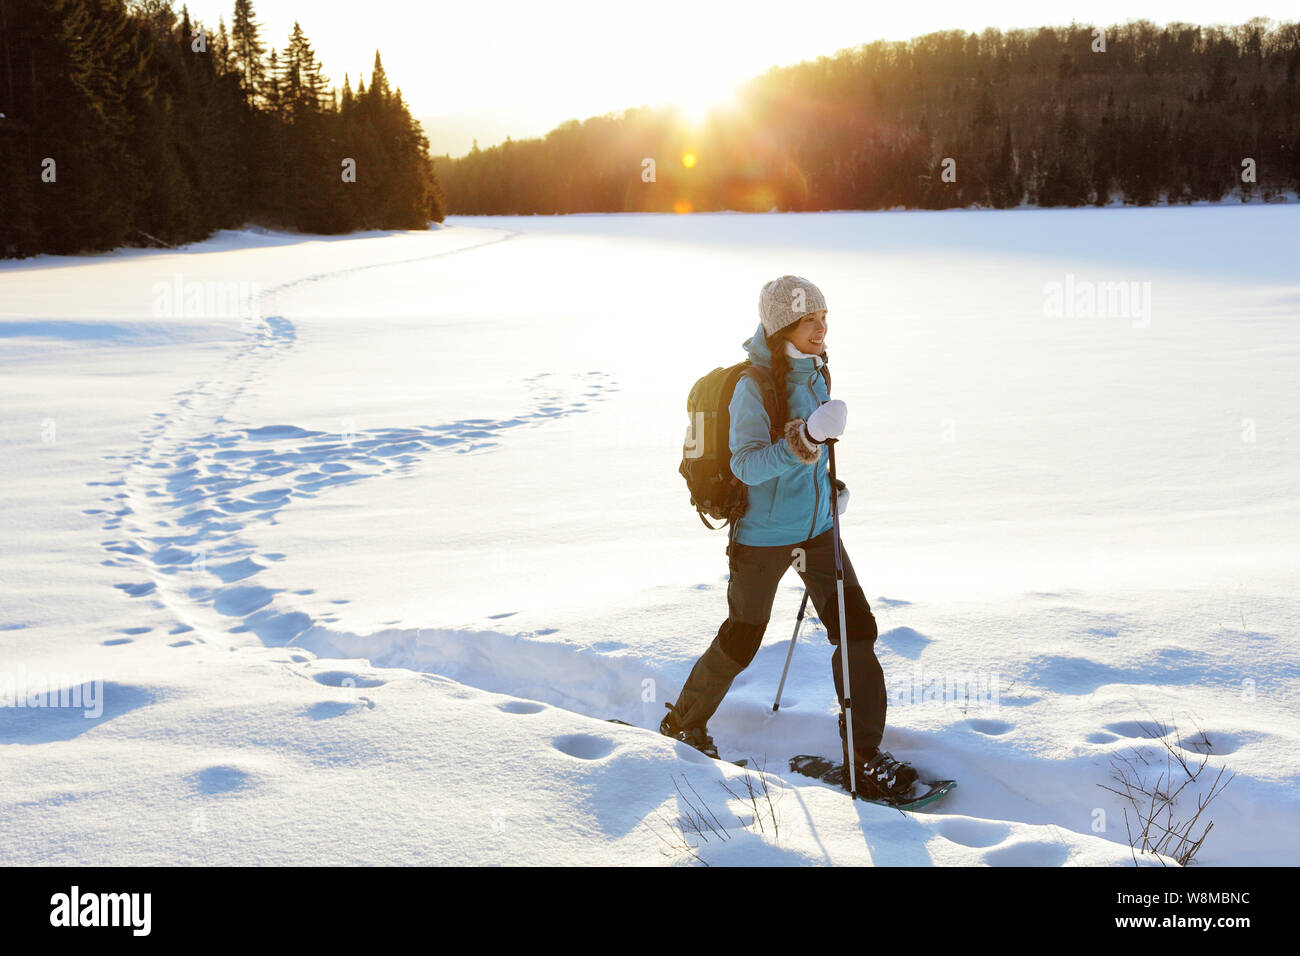 Winter Sport. Frau Wanderer wandern mit Rucksack und Schneeschuhen Schneeschuhwandern auf Snow Trail Wald in Québec, Kanada bei Sonnenuntergang. Schöne Landschaft mit Nadelbäumen und weißen Schnee. Stockfoto